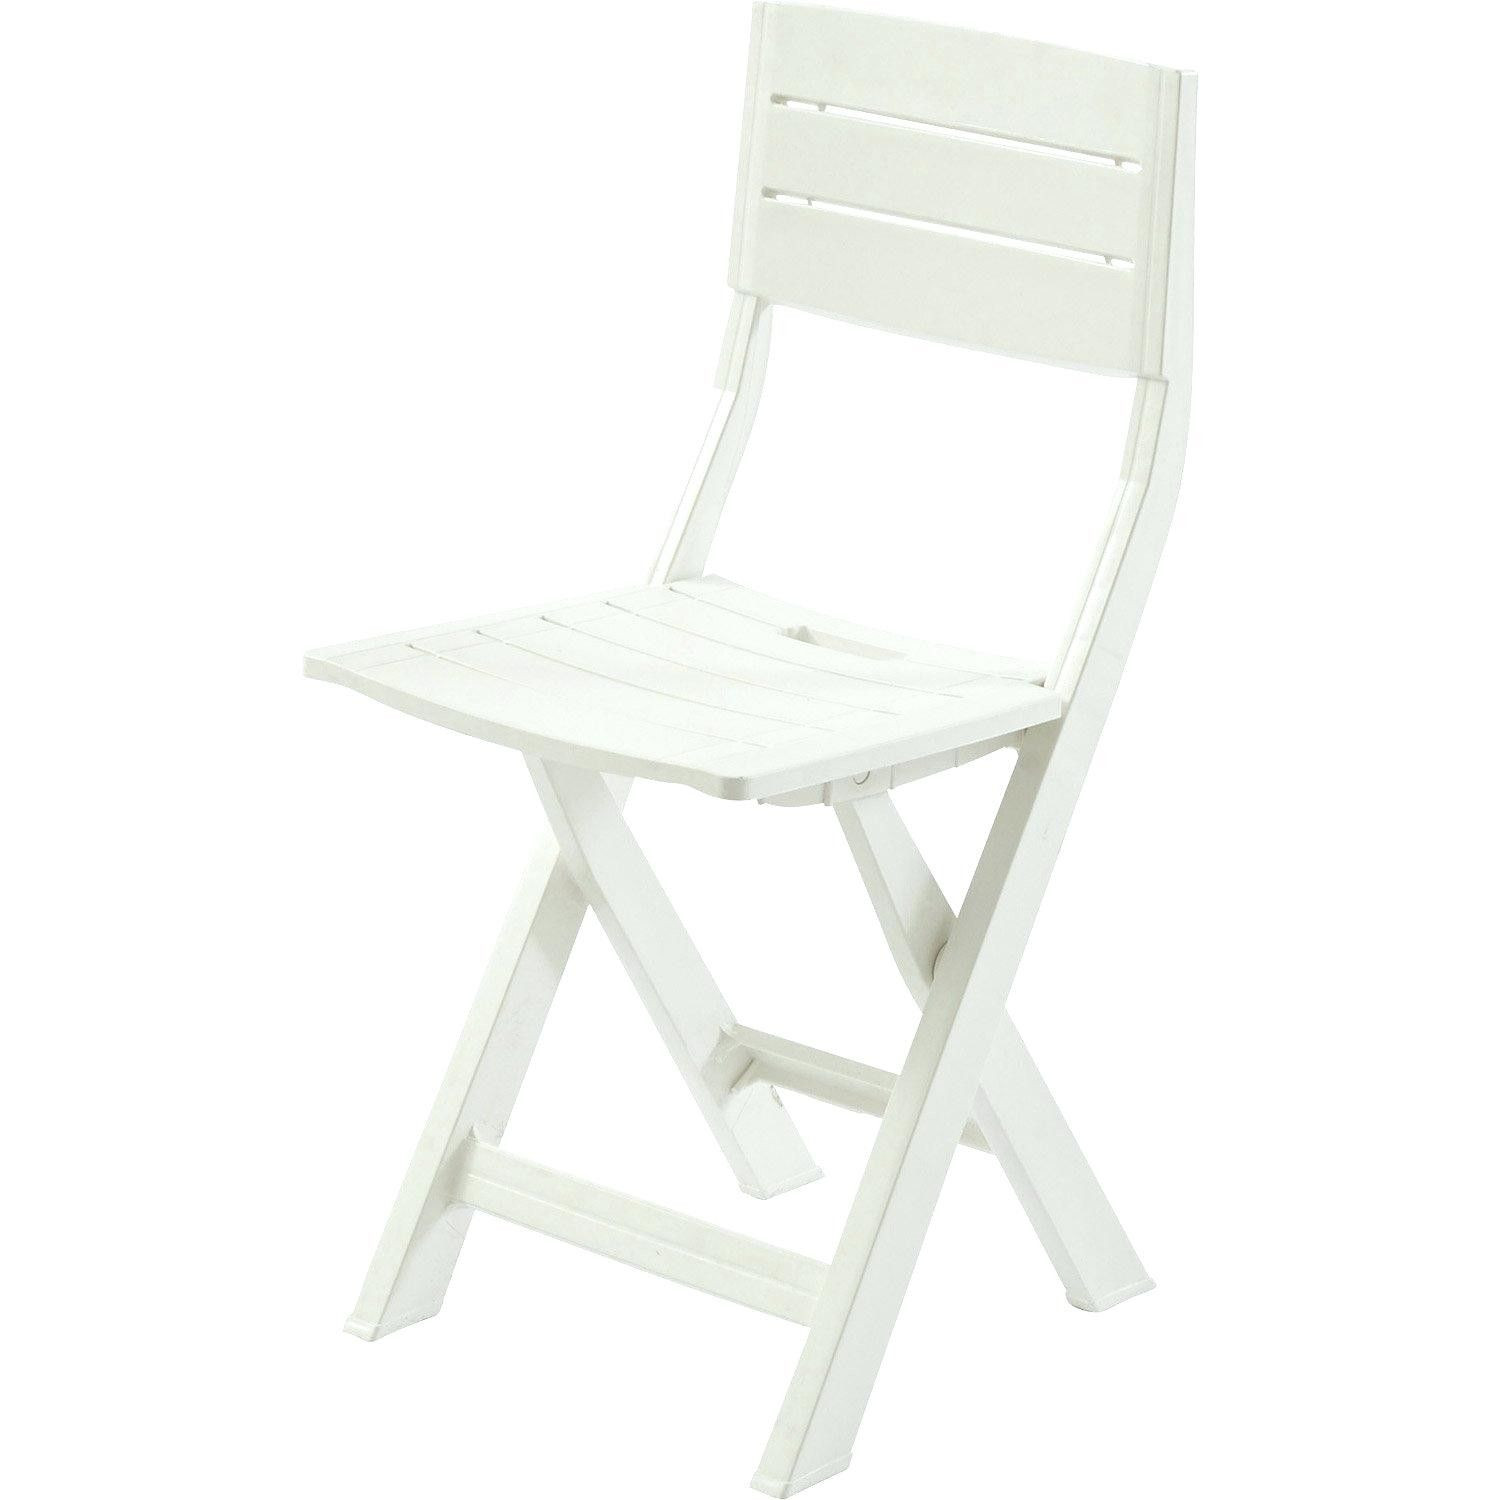 conforama chaise pliante chaise de jardin pliante blanche avec conforama chaises of conforama chaise pliante